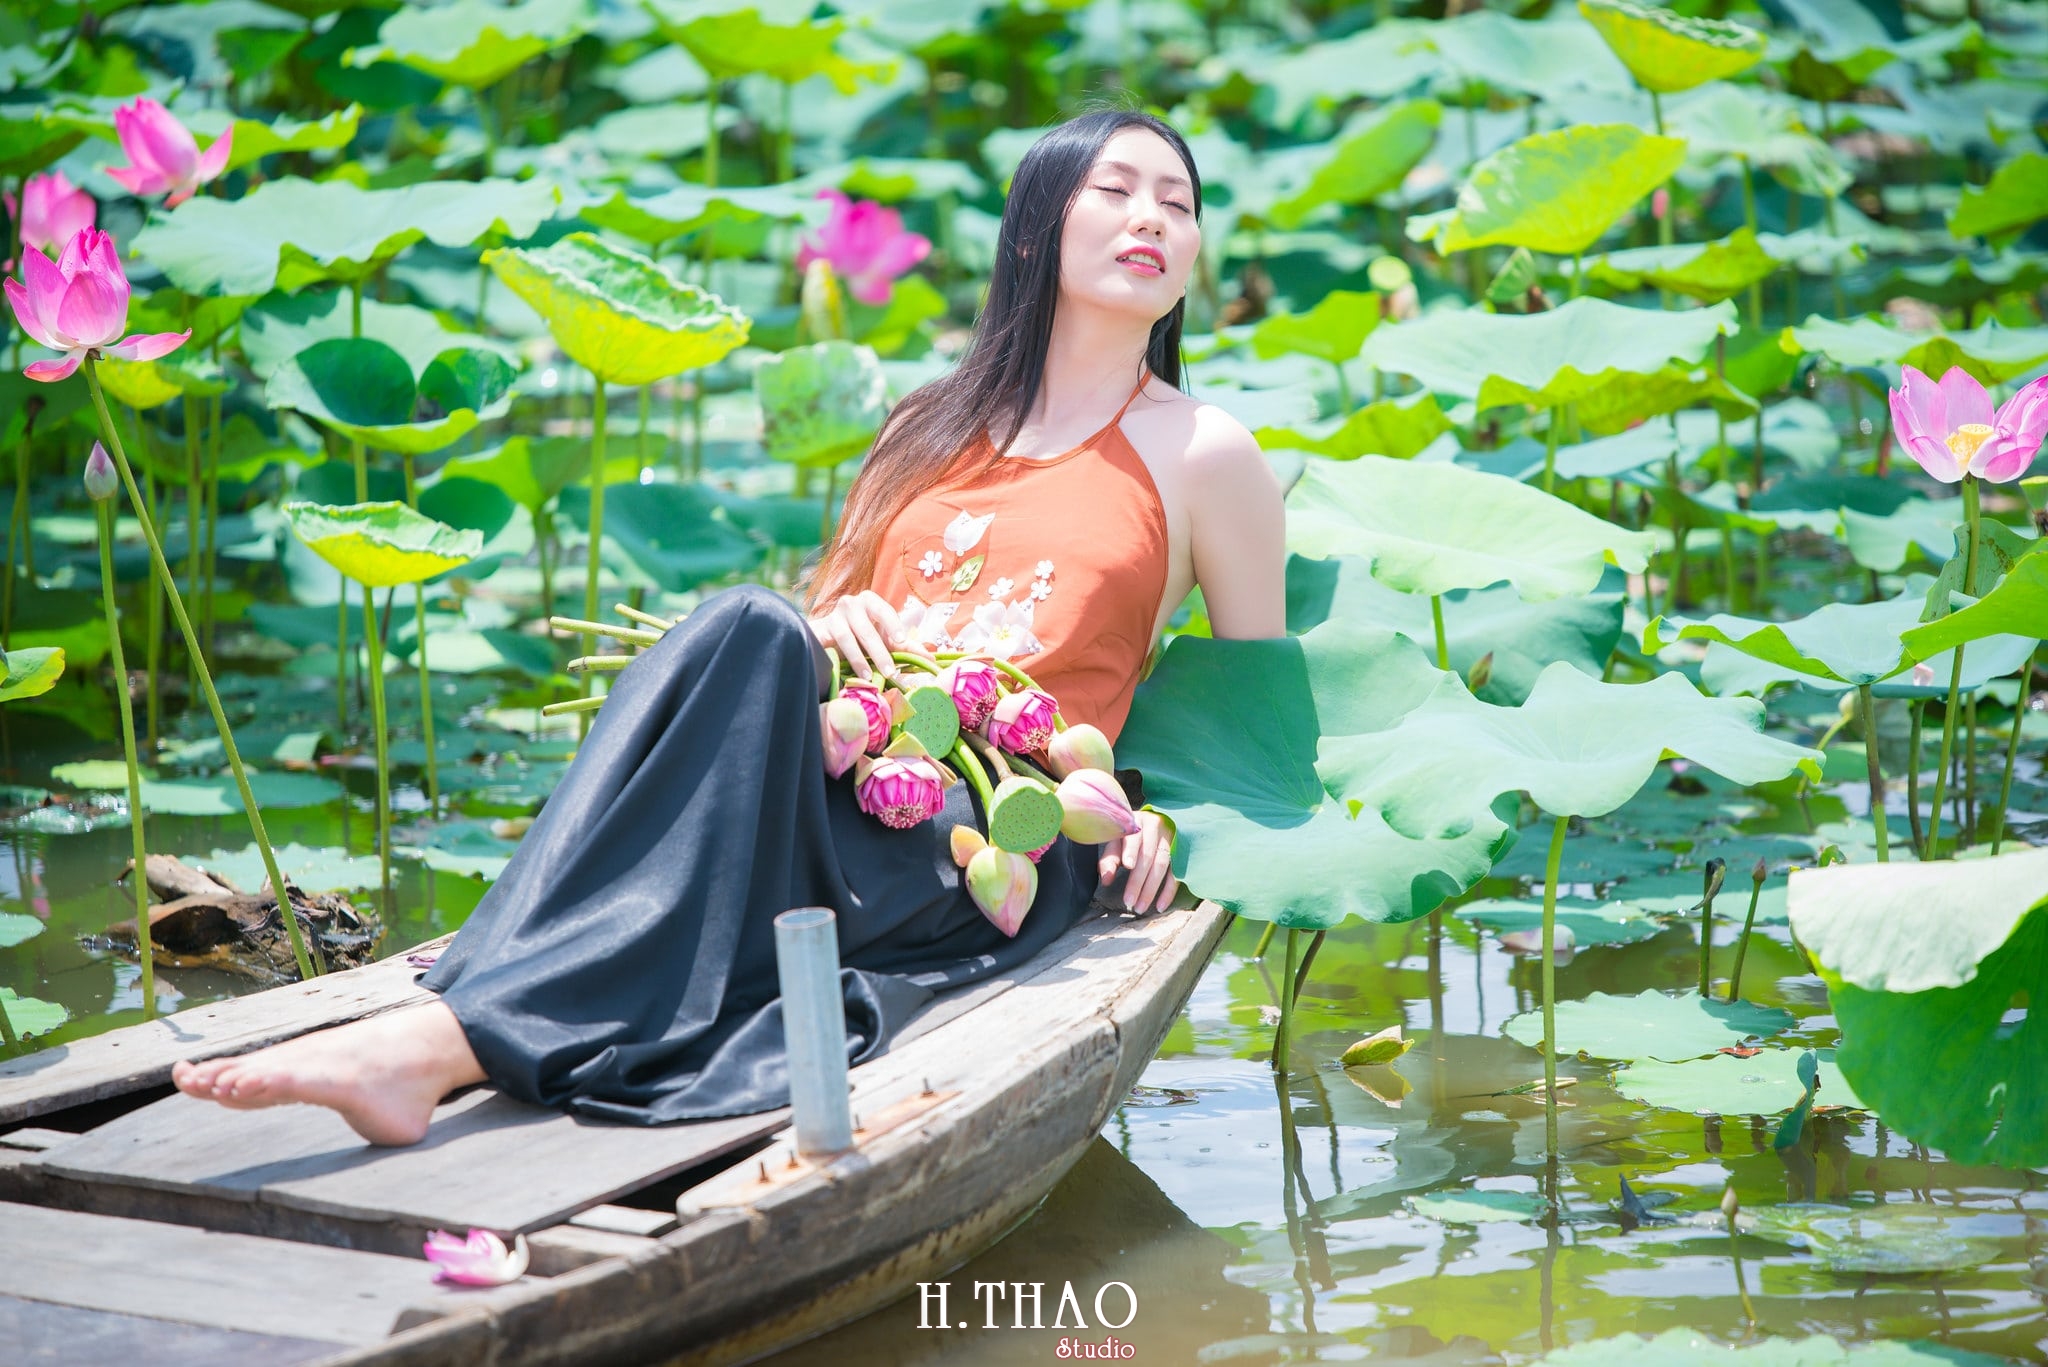 ao ba ba 2 - 39 cách tạo dáng chụp ảnh với hoa sen tuyệt đẹp - HThao Studio